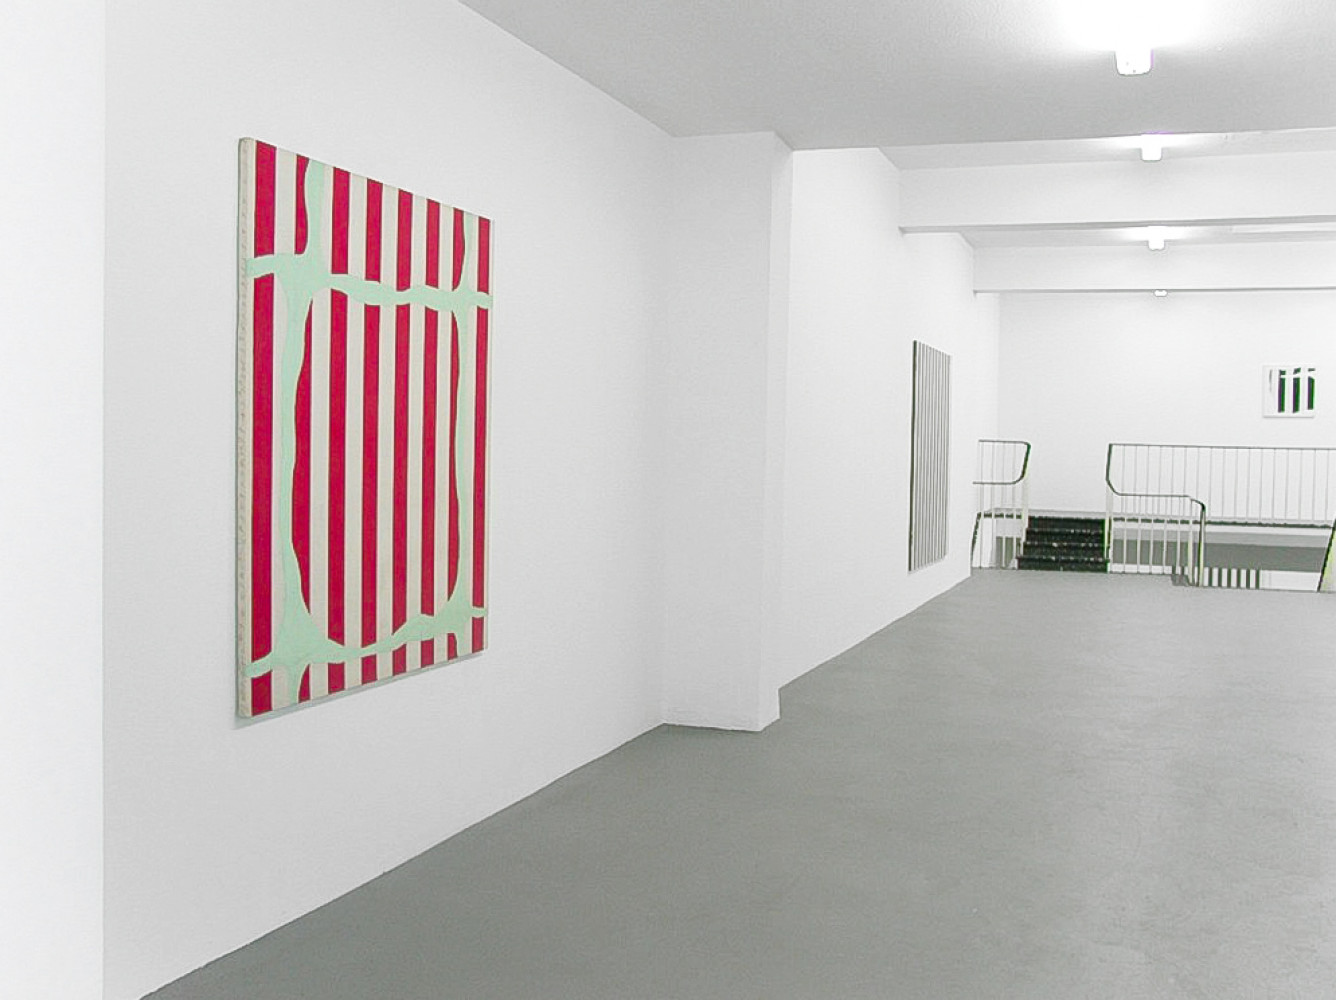 Daniel Buren, ‘Peinture blanche 1965 - 1966’, Installation view, Buchmann Galerie Köln, 2002